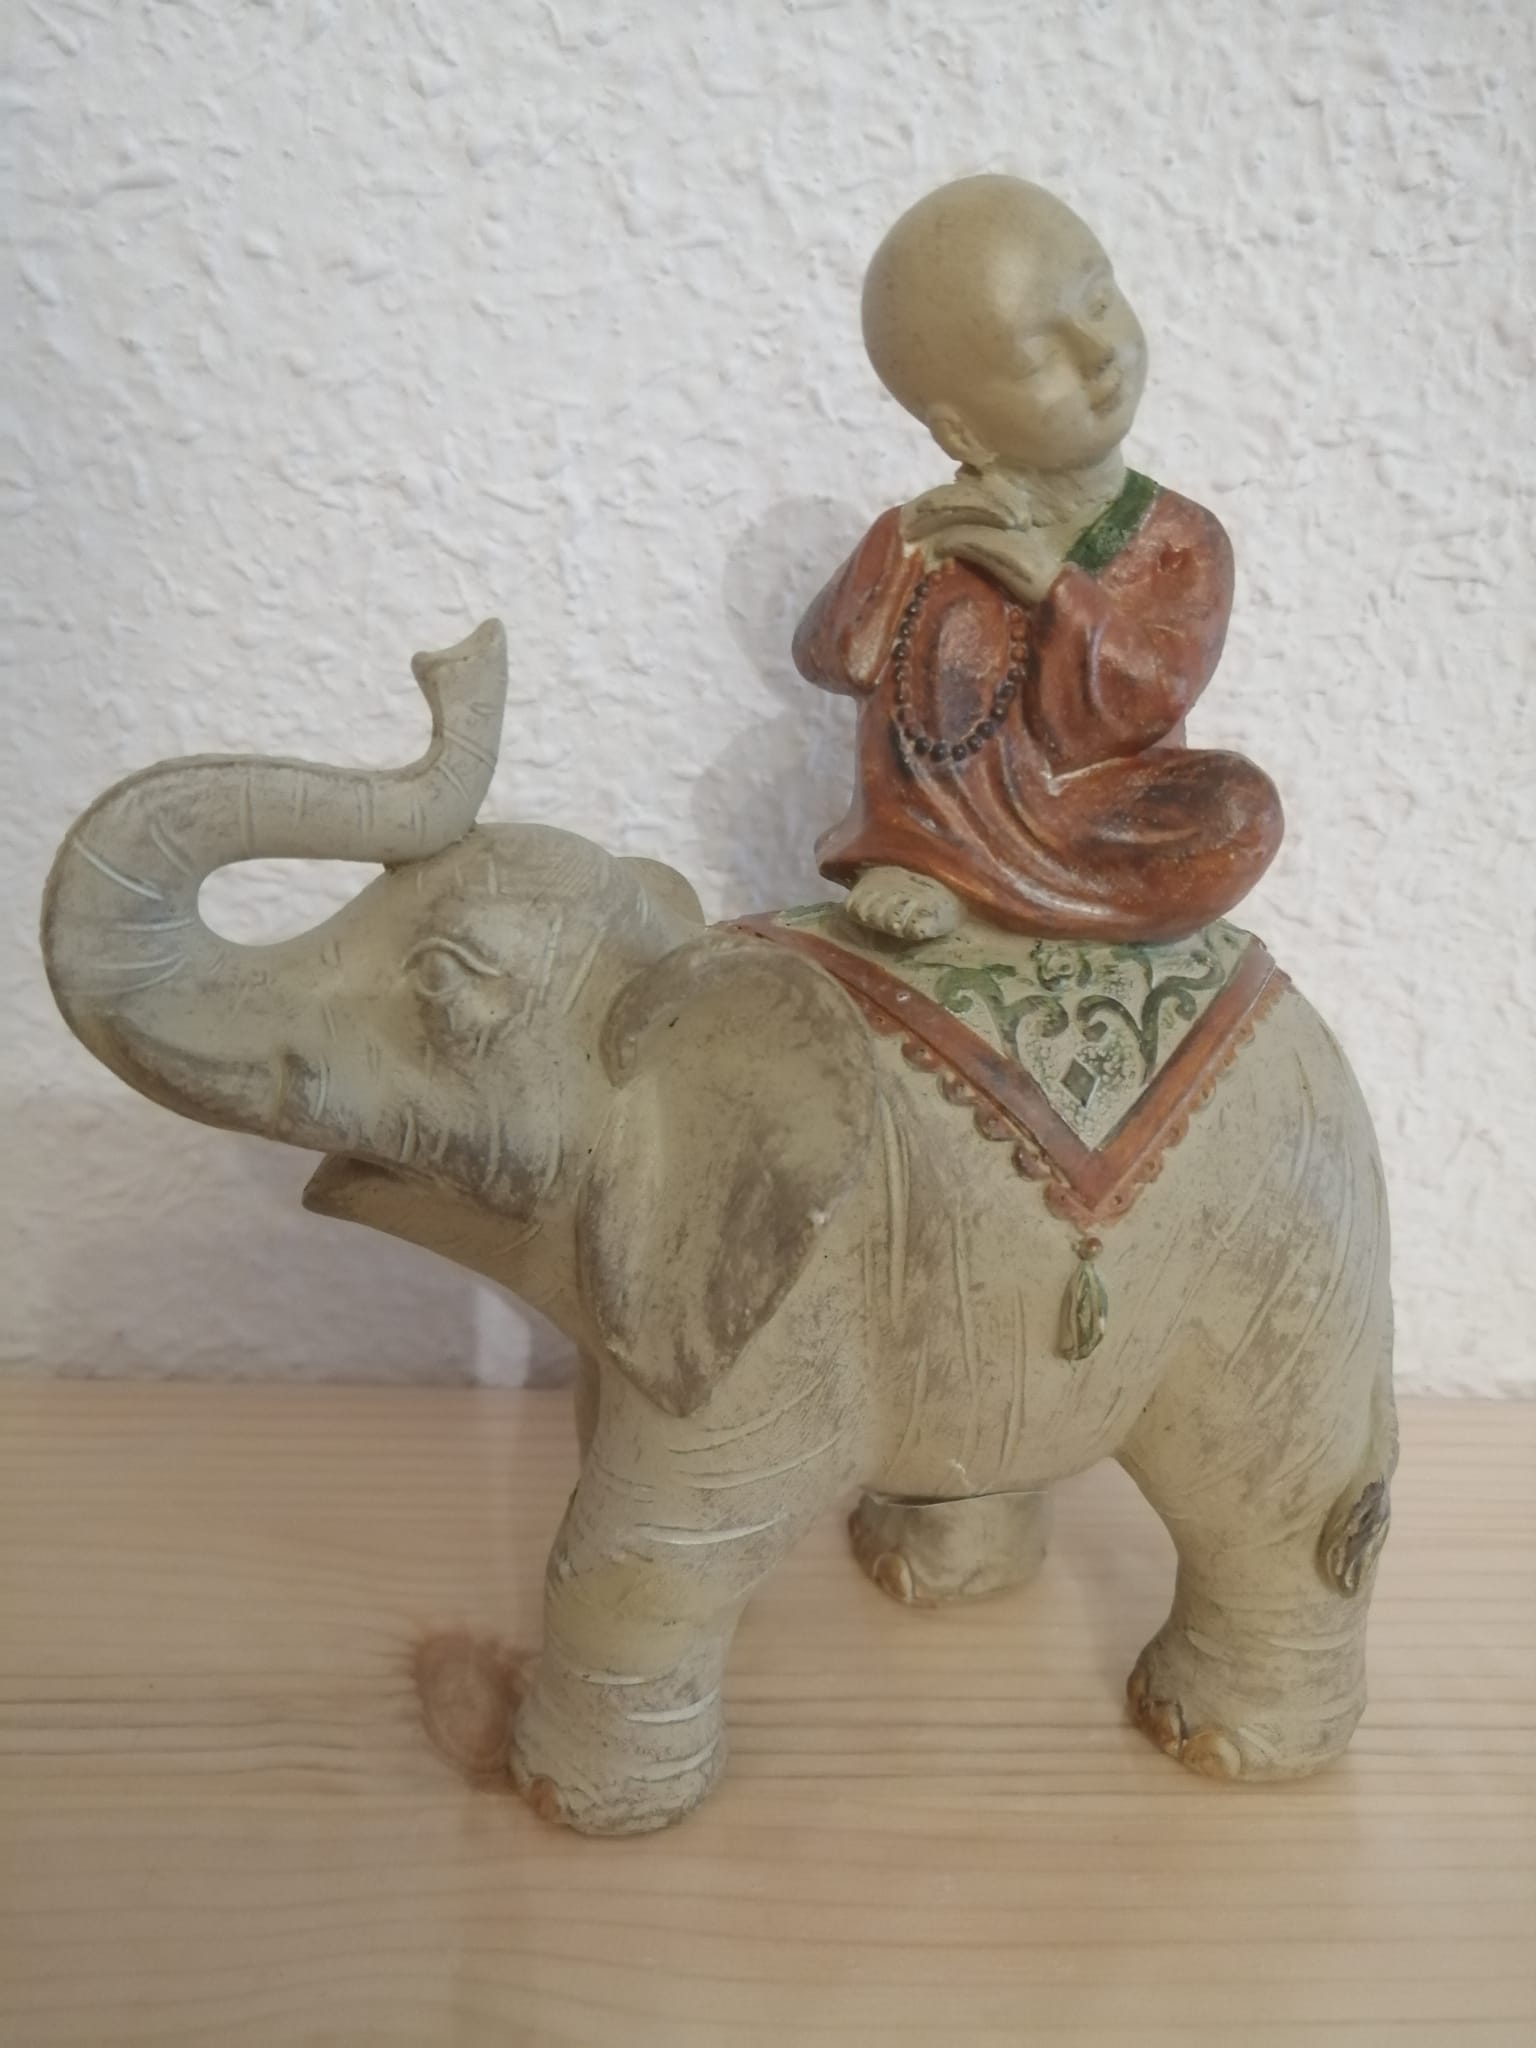 Elefante con monje decoración meditación budista